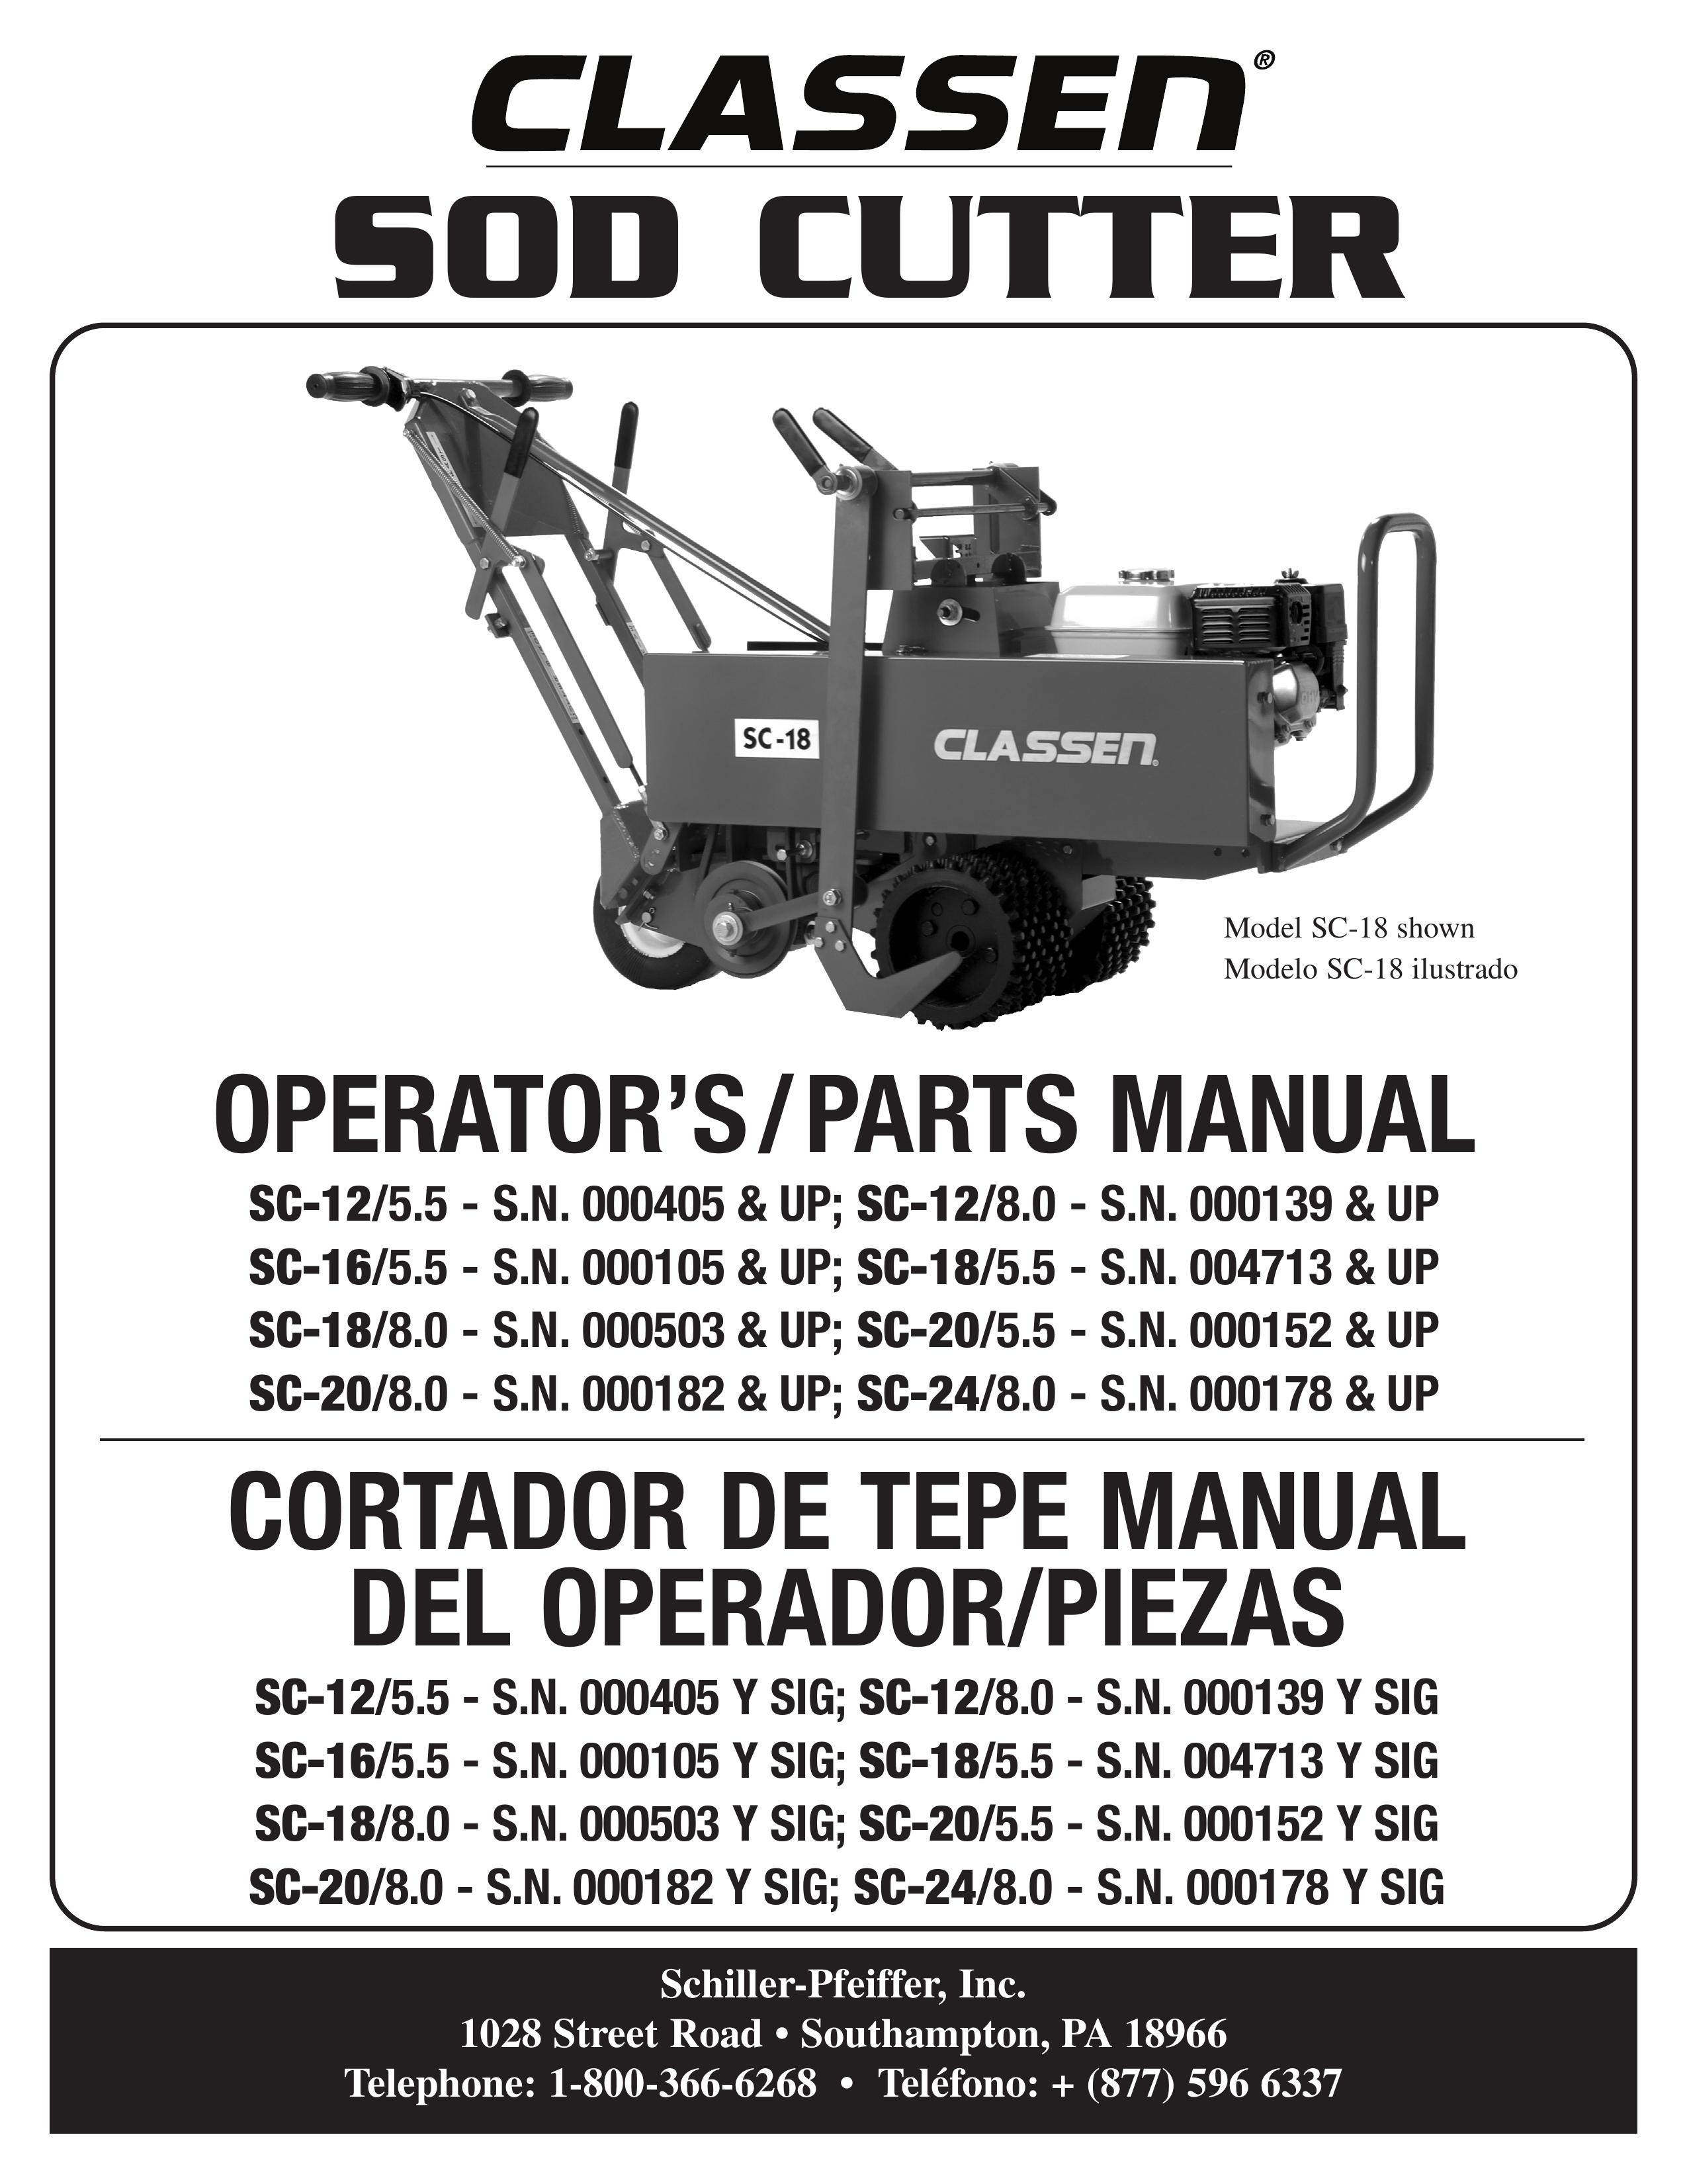 Classen SC-18/8.0 Brush Cutter User Manual